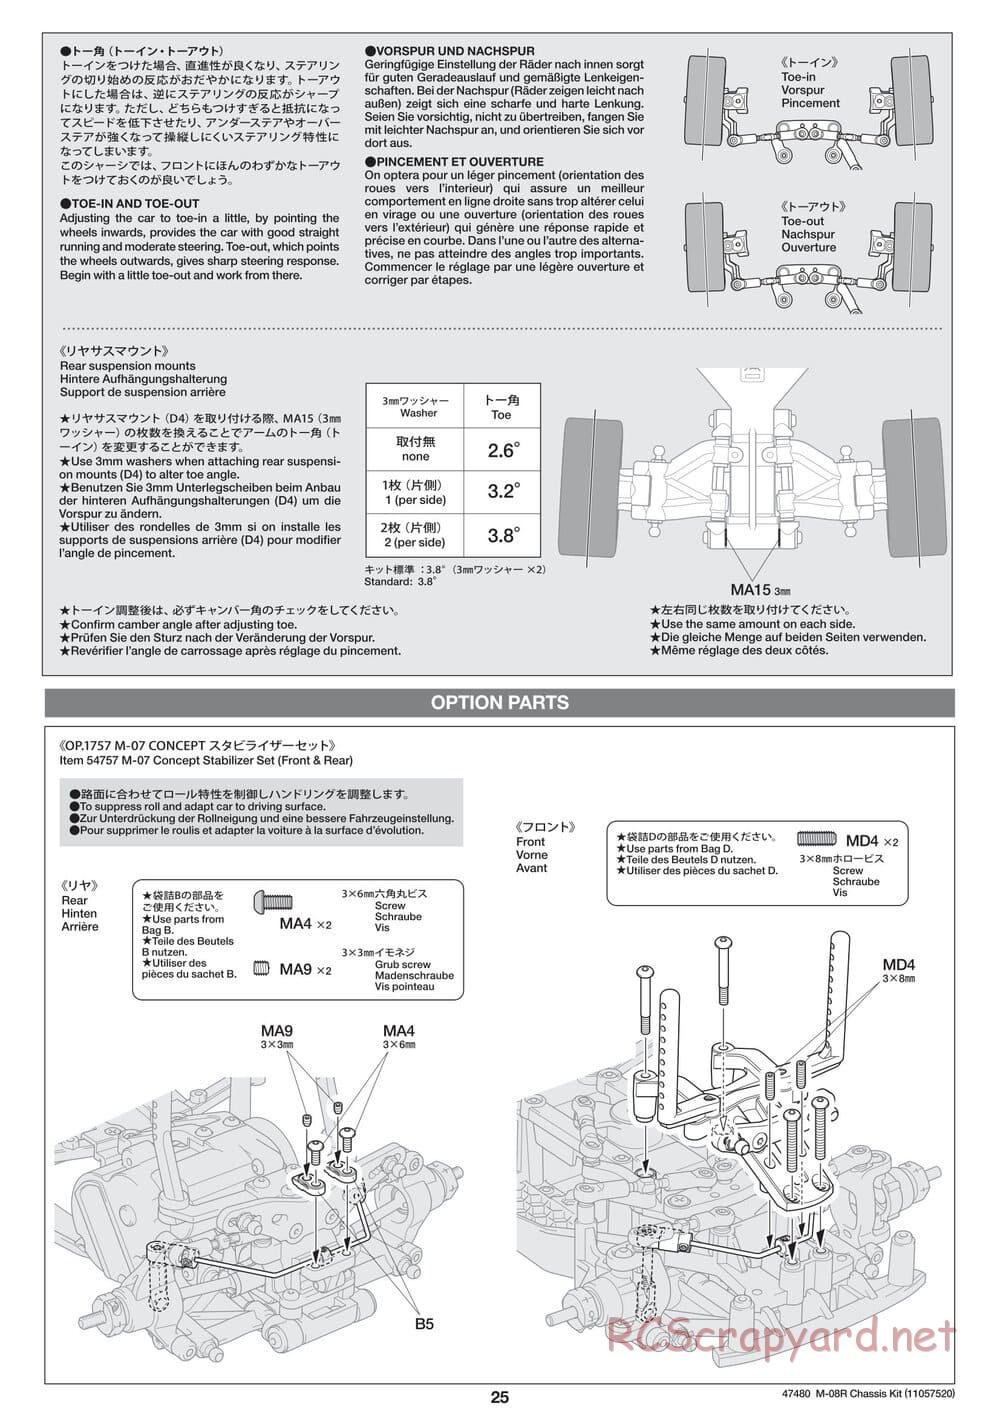 Tamiya - M-08R Chassis - Manual - Page 25